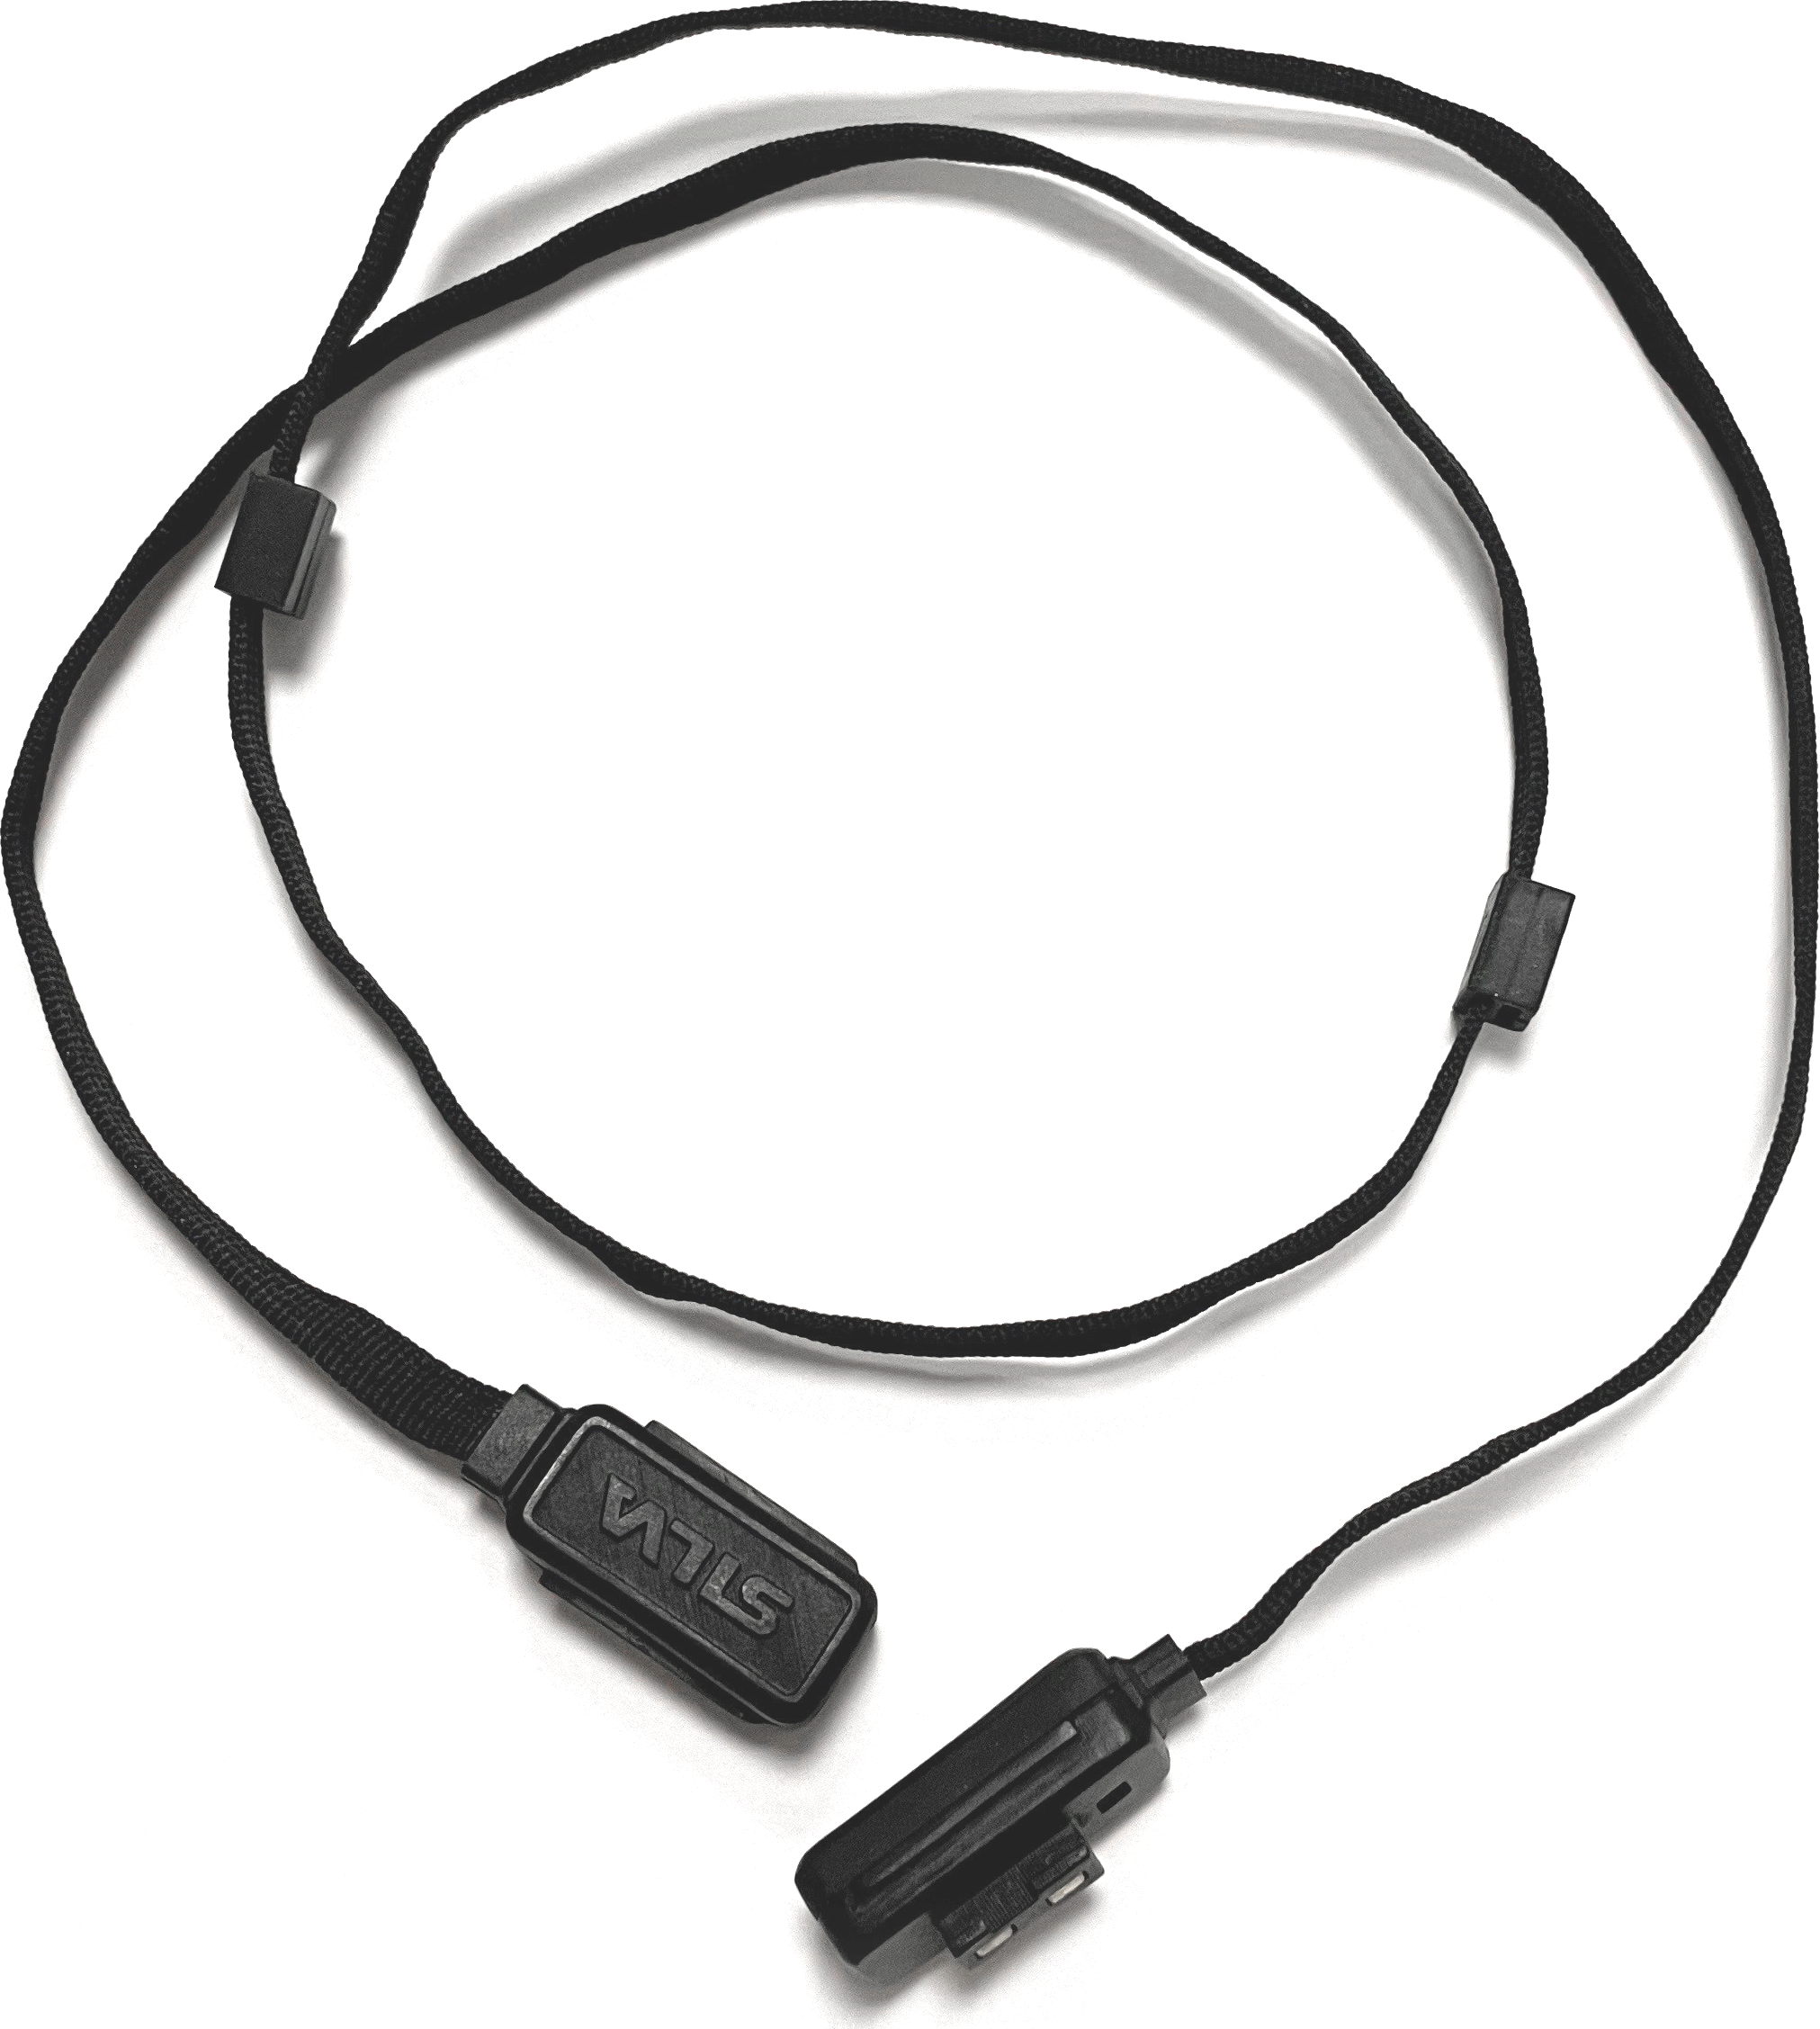 Silva Free Extension Cable 40cm Nocolour No Size, Black